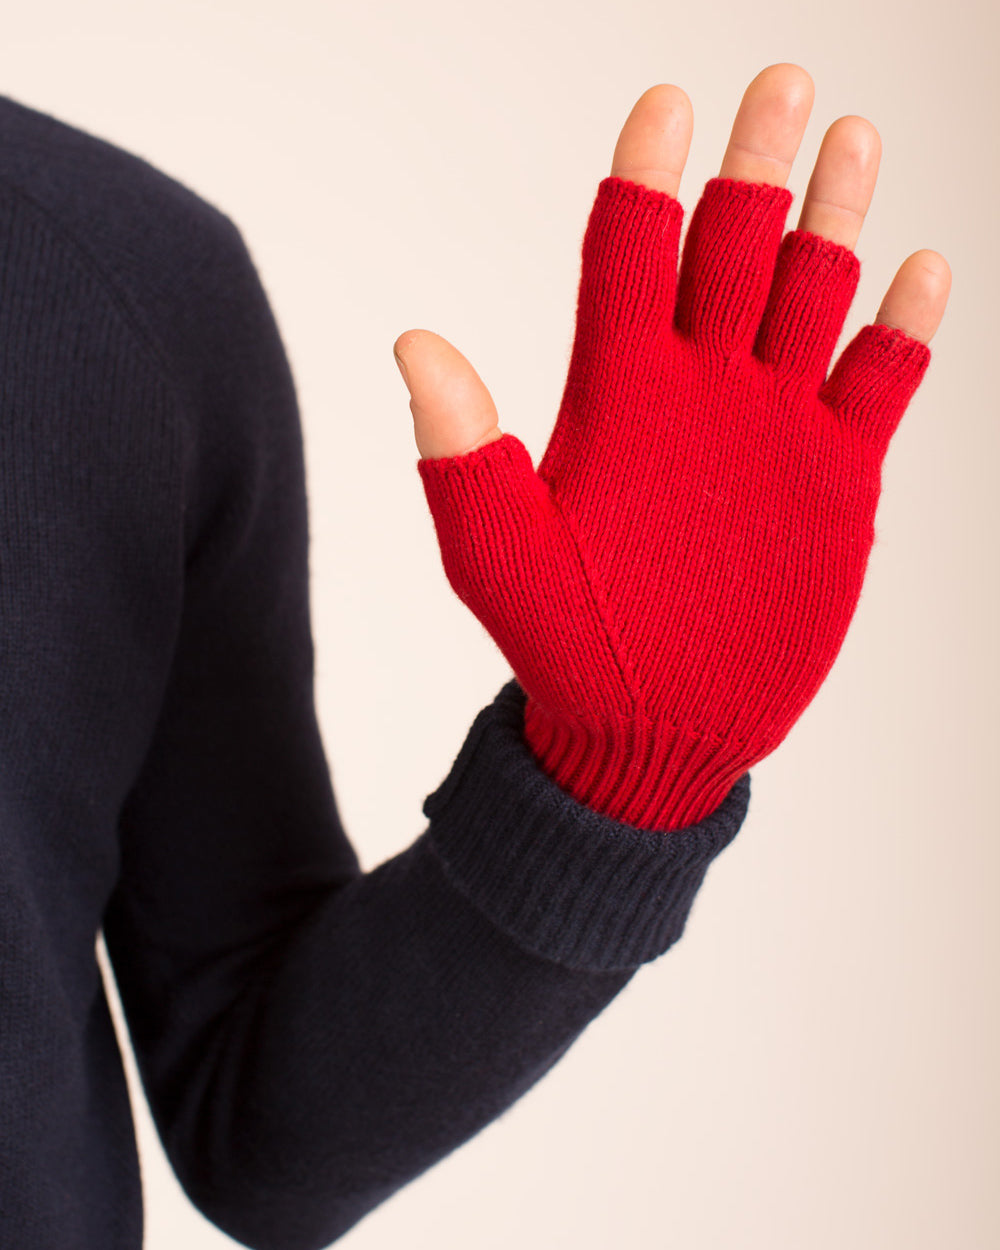 Studded Fingerless Gloves (pair)